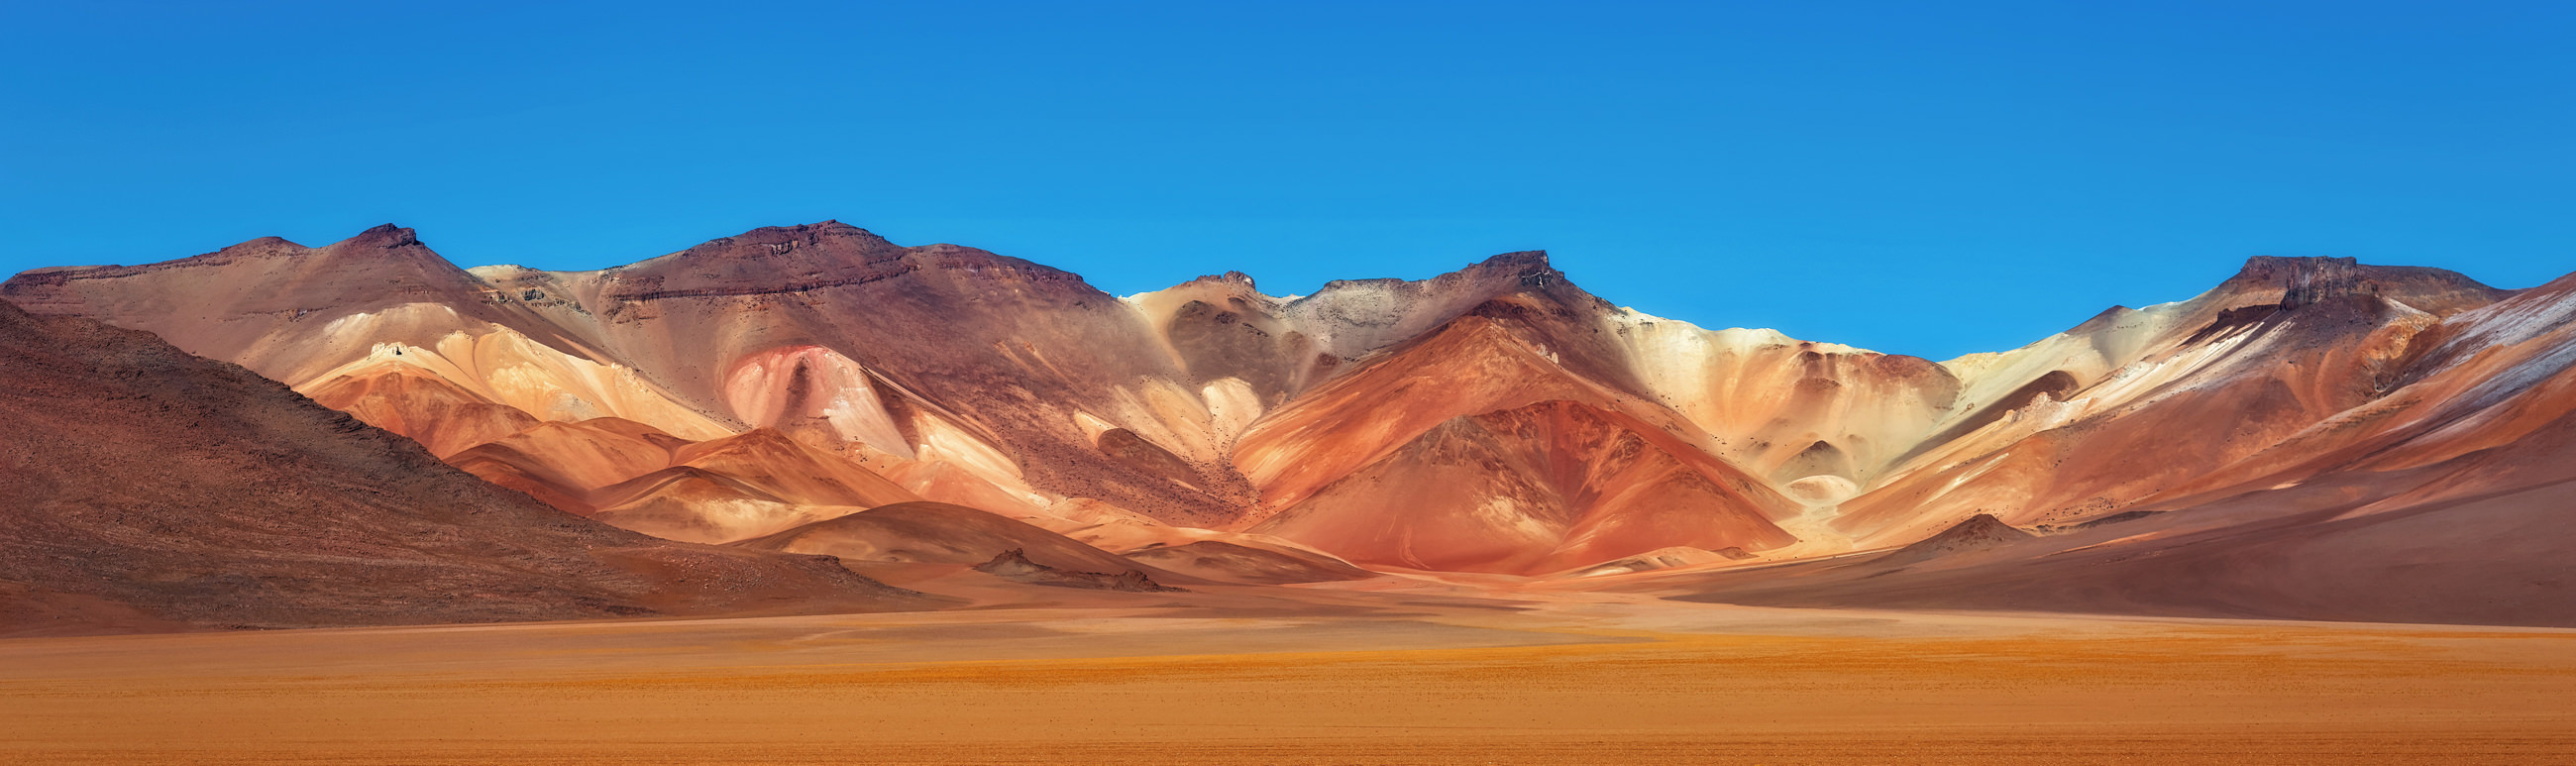 Bolivia Reizen Atacama Reisspecialist Pano1 3